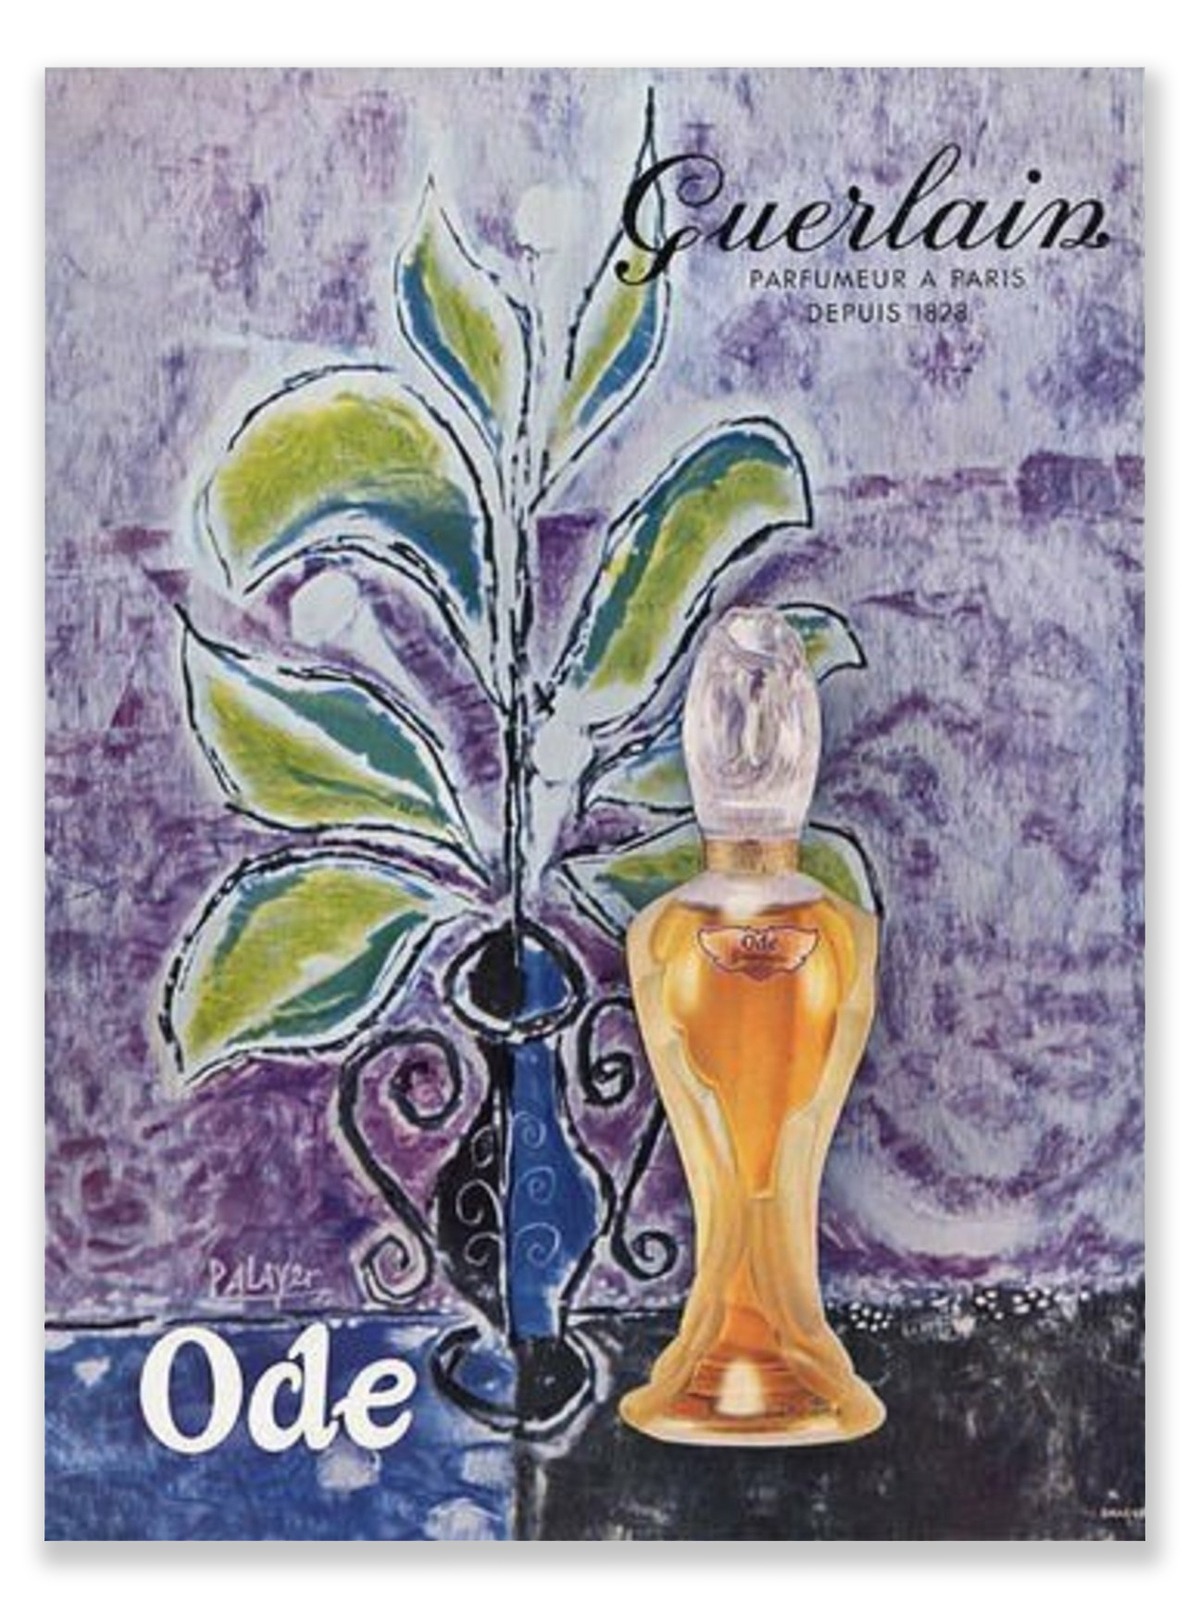 'Ode' - der letzte Duft von Jacques Guerlain